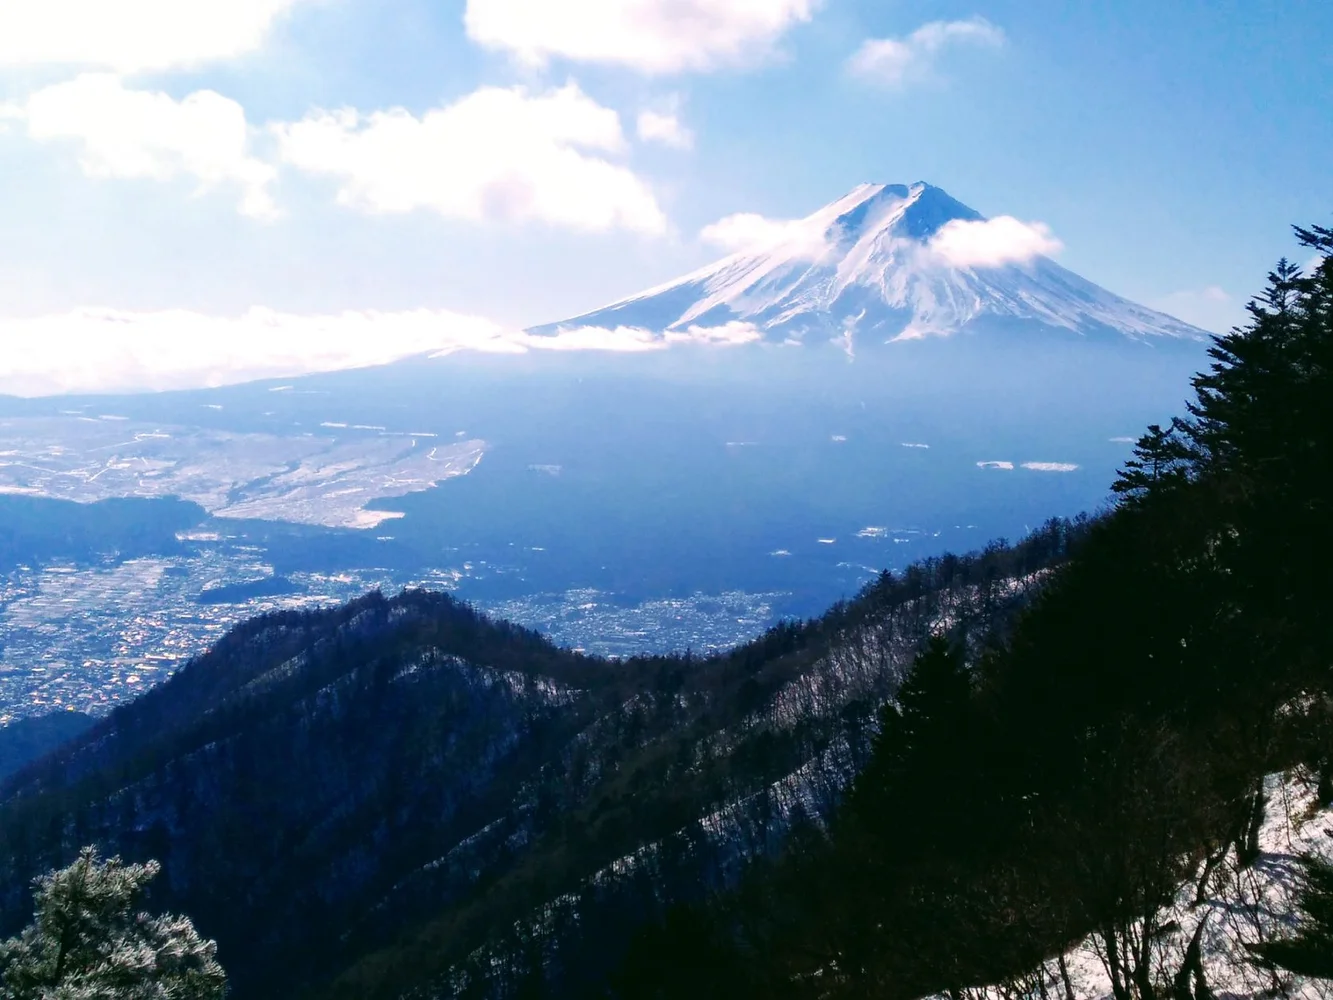 1-Day Mt. Fuji Viewing Hike in Yamanashi